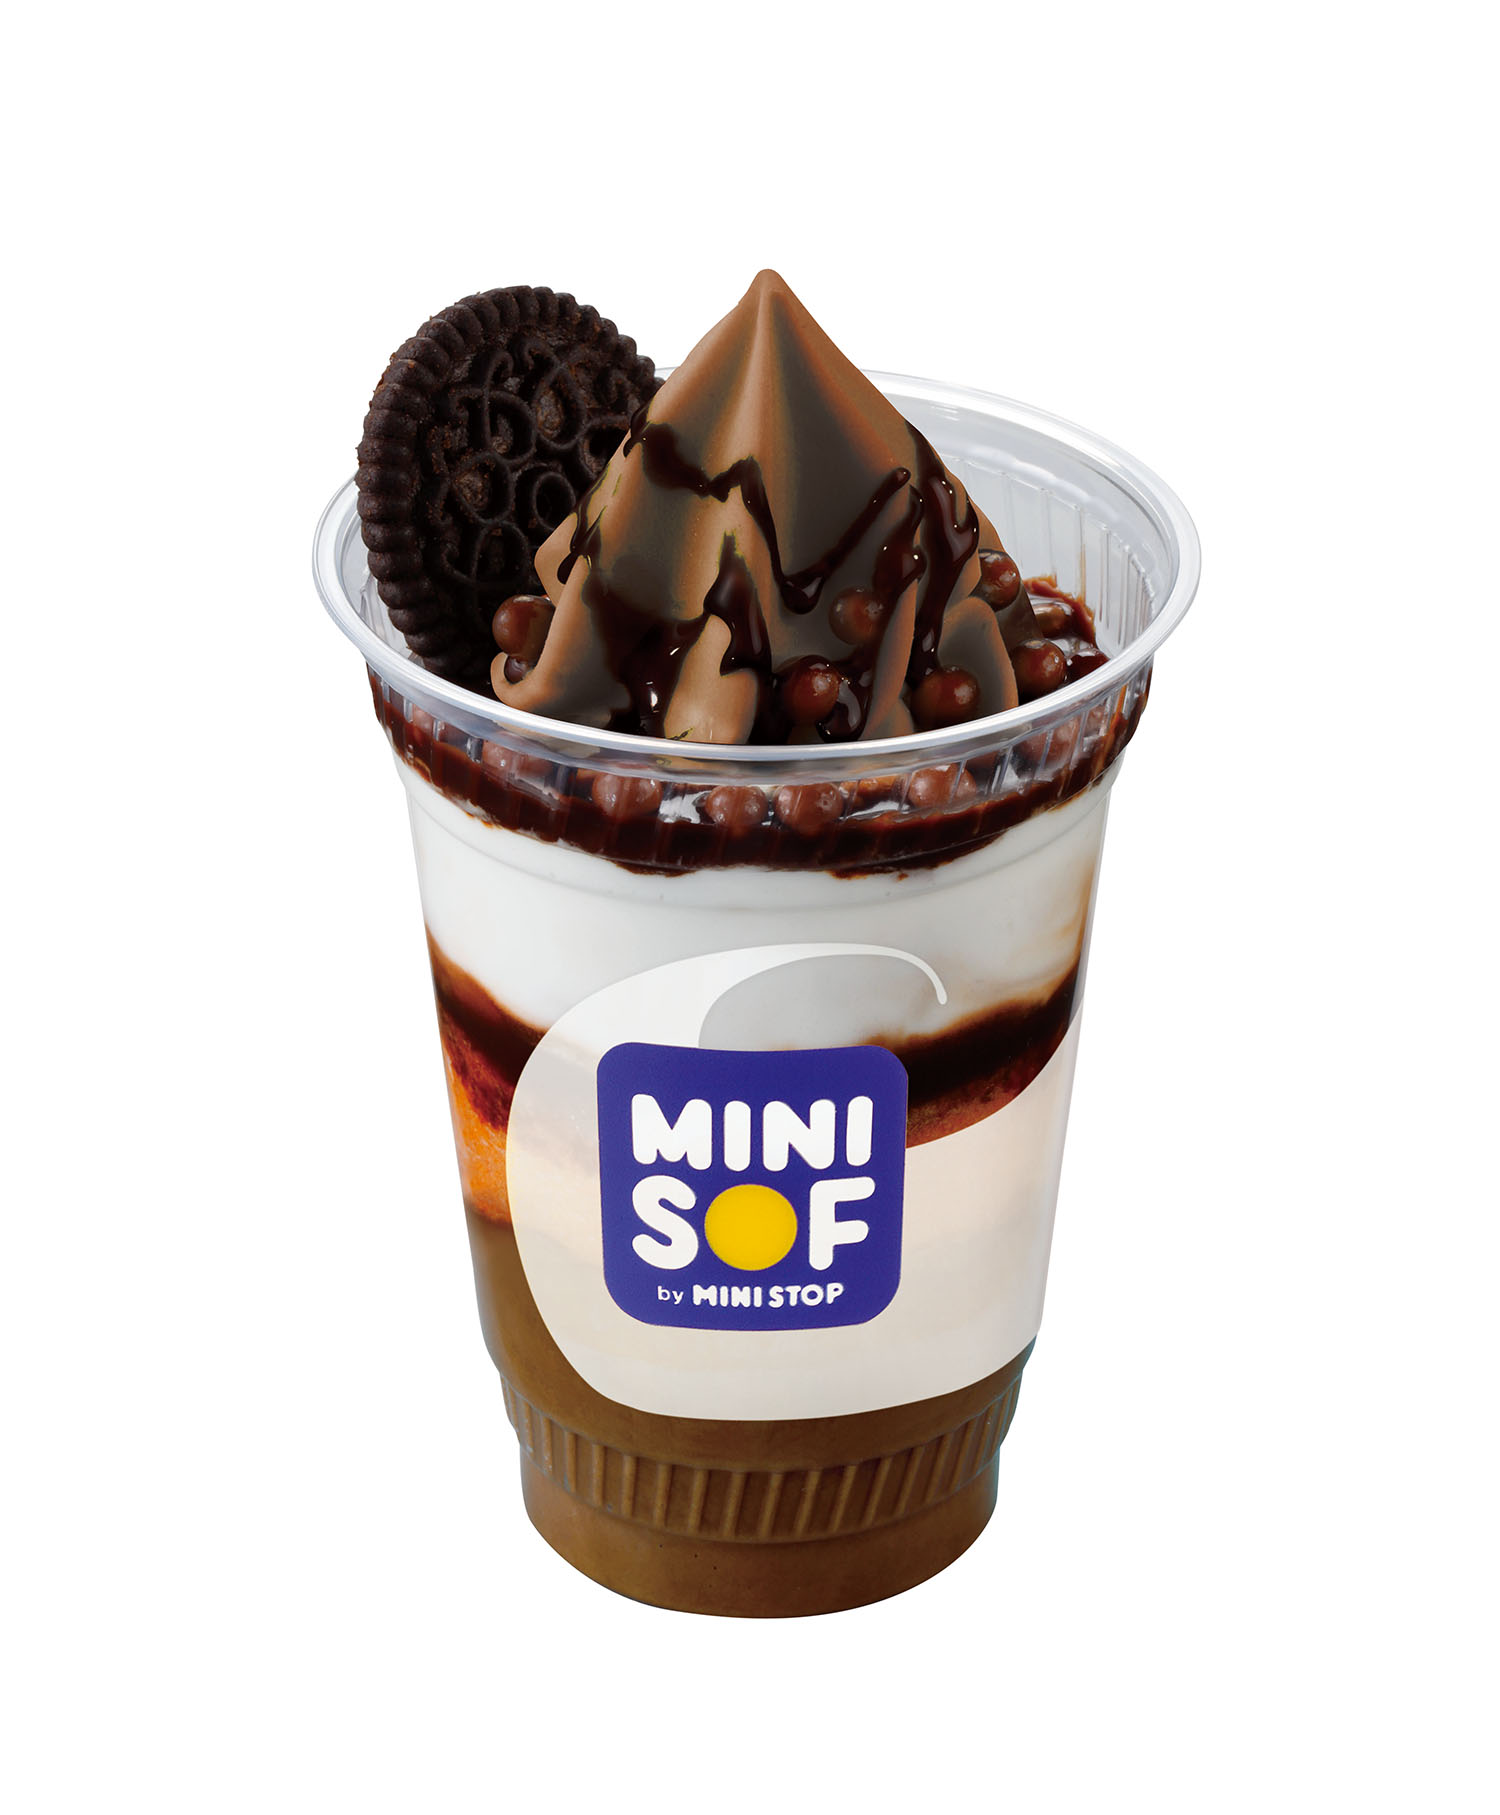 ソフトクリーム専門店mini Sof ミニソフ が池袋に上陸 新メニュー いちごのショートケーキ なども登場 Emo Miu エモミュー